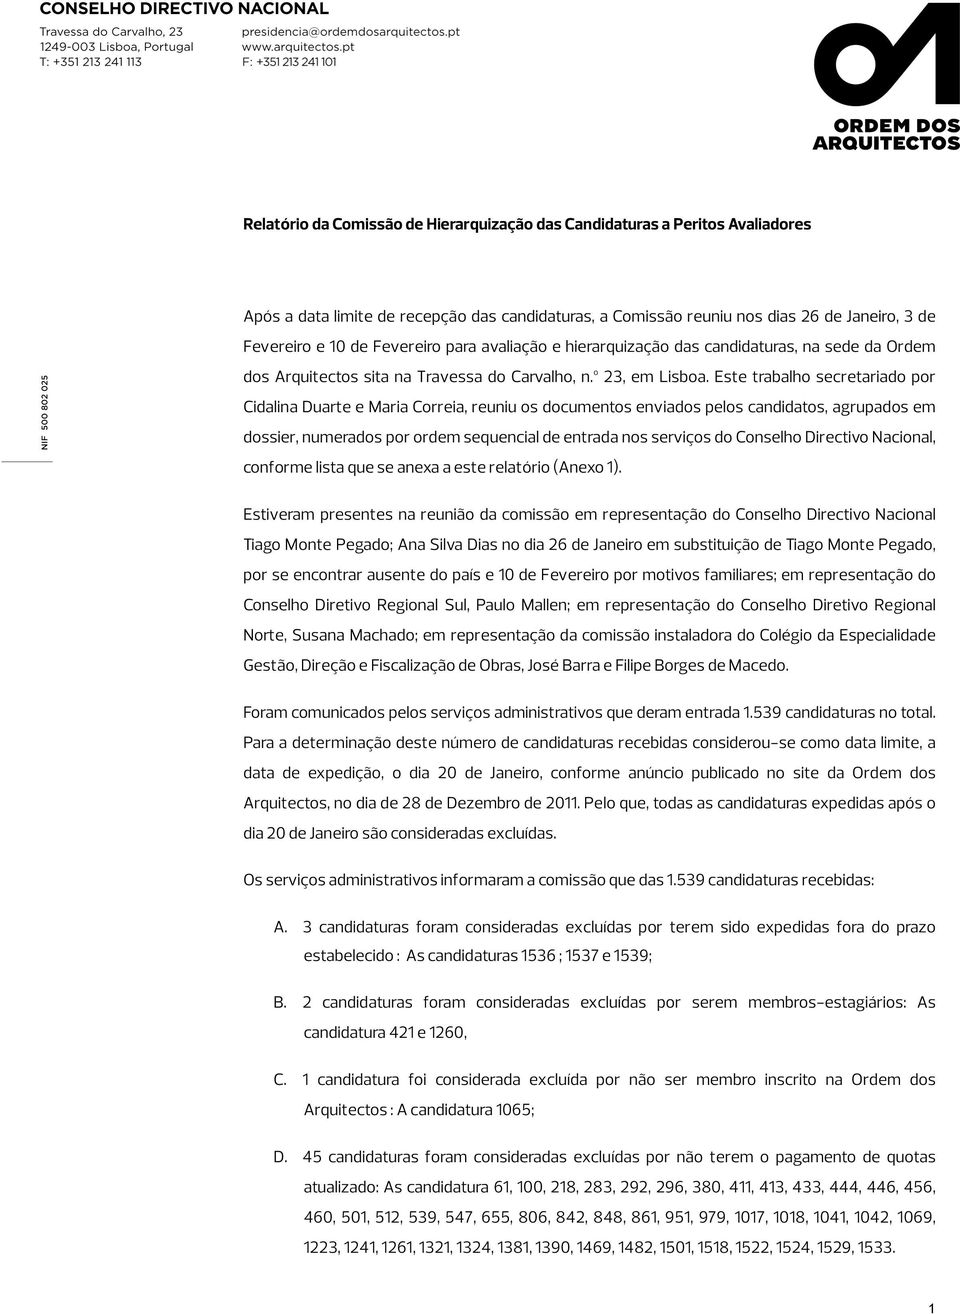 Este trabalho secretariado por Cidalina Duarte e Maria Correia, reuniu os documentos enviados pelos candidatos, agrupados em dossier, numerados por ordem sequencial de entrada nos serviços do